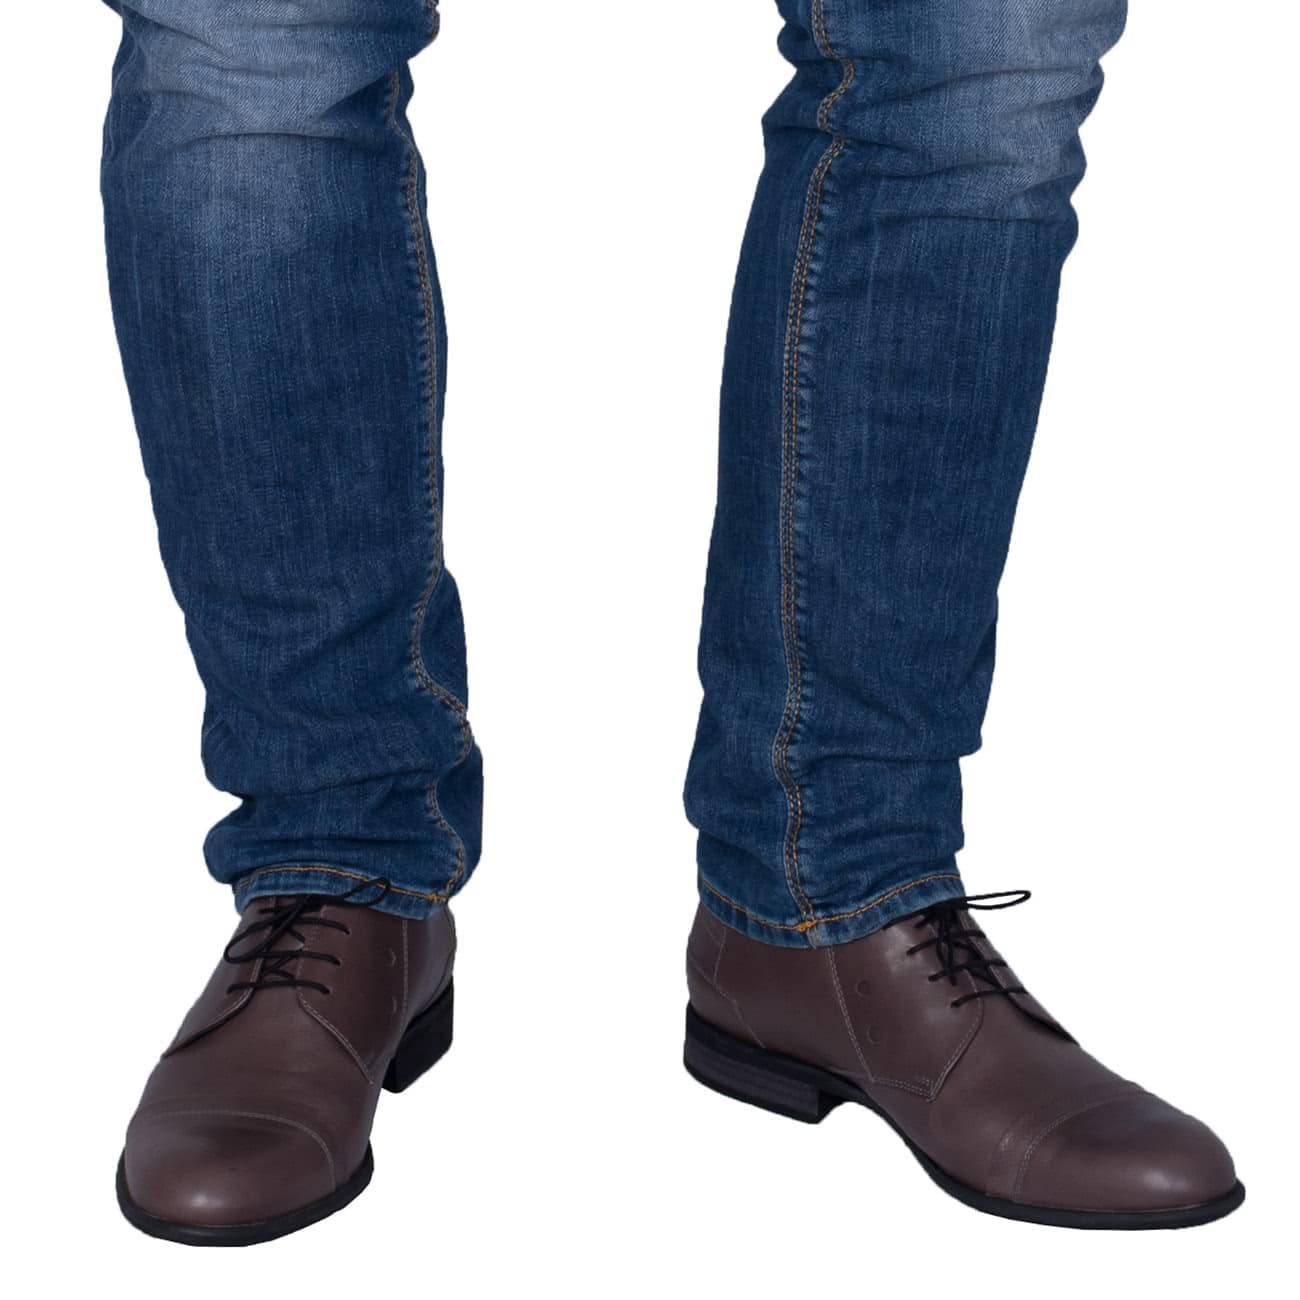 Какую обувь лучше носить с джинсами мужчинам?